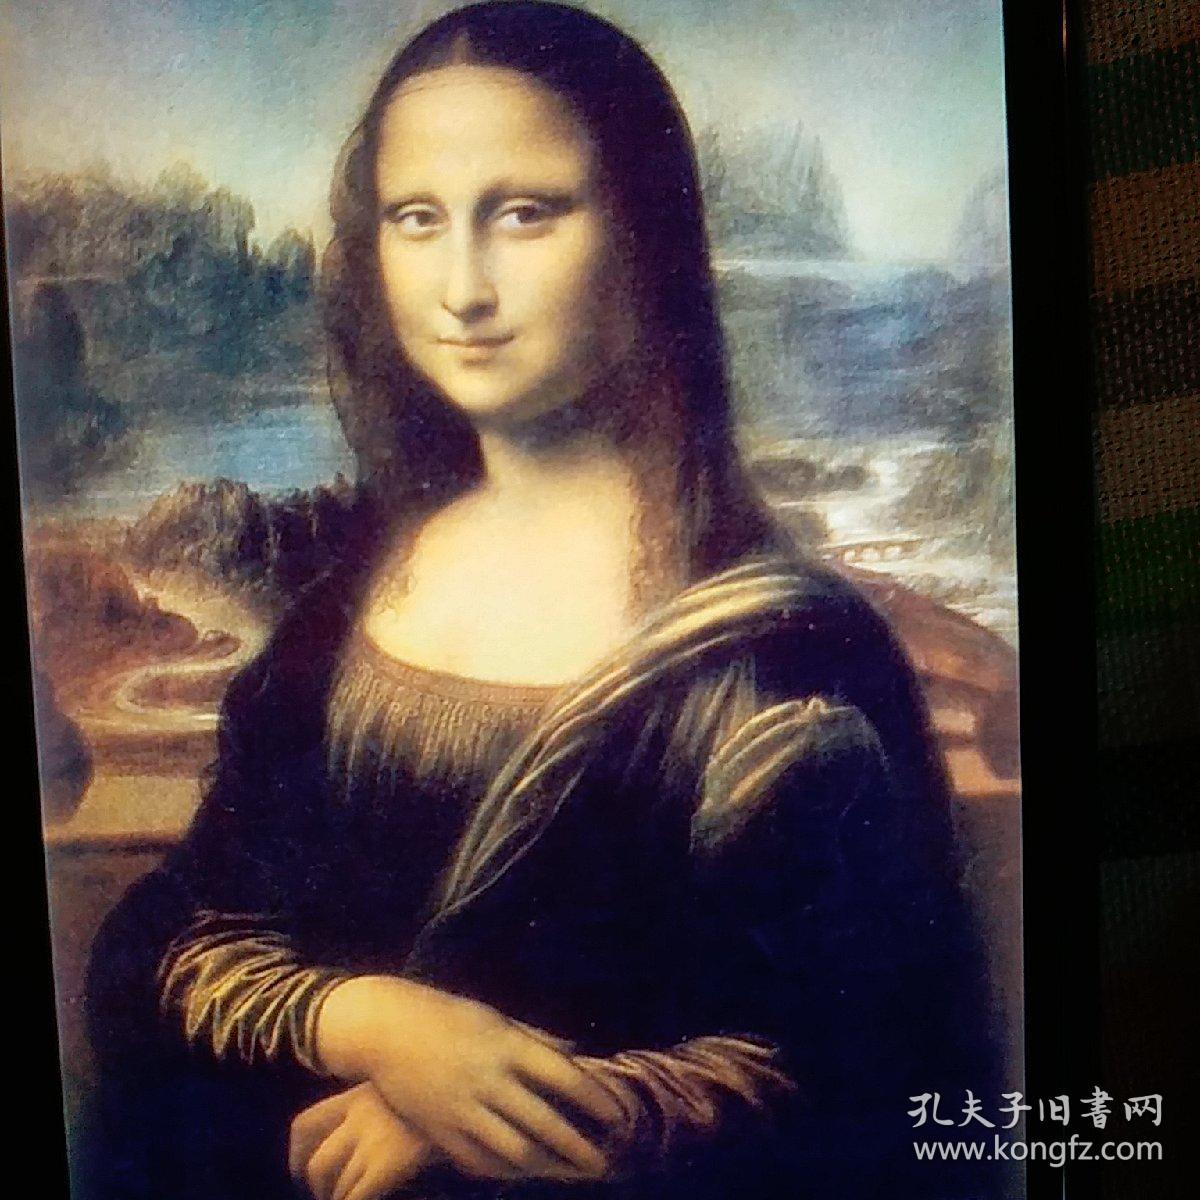 世界十大名画排名第一是达芬奇的蒙娜丽莎.